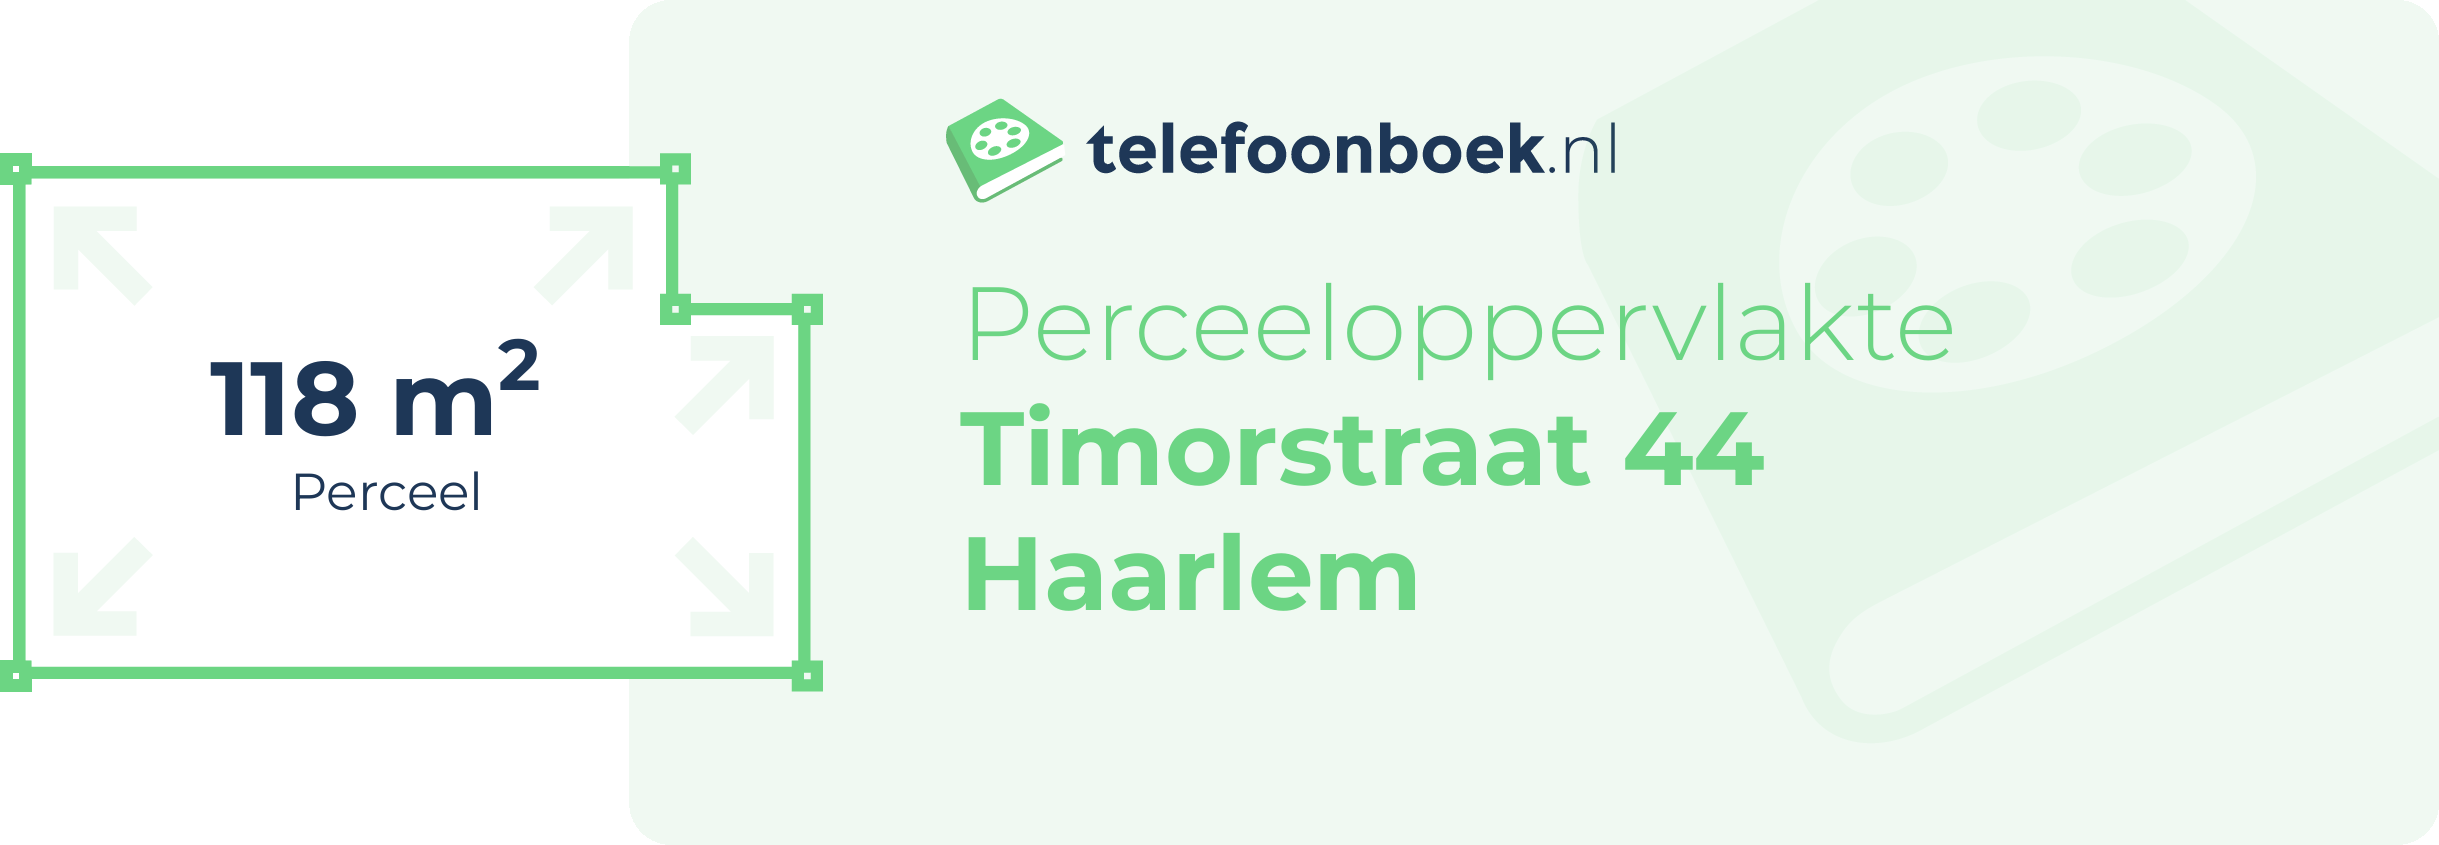 Perceeloppervlakte Timorstraat 44 Haarlem